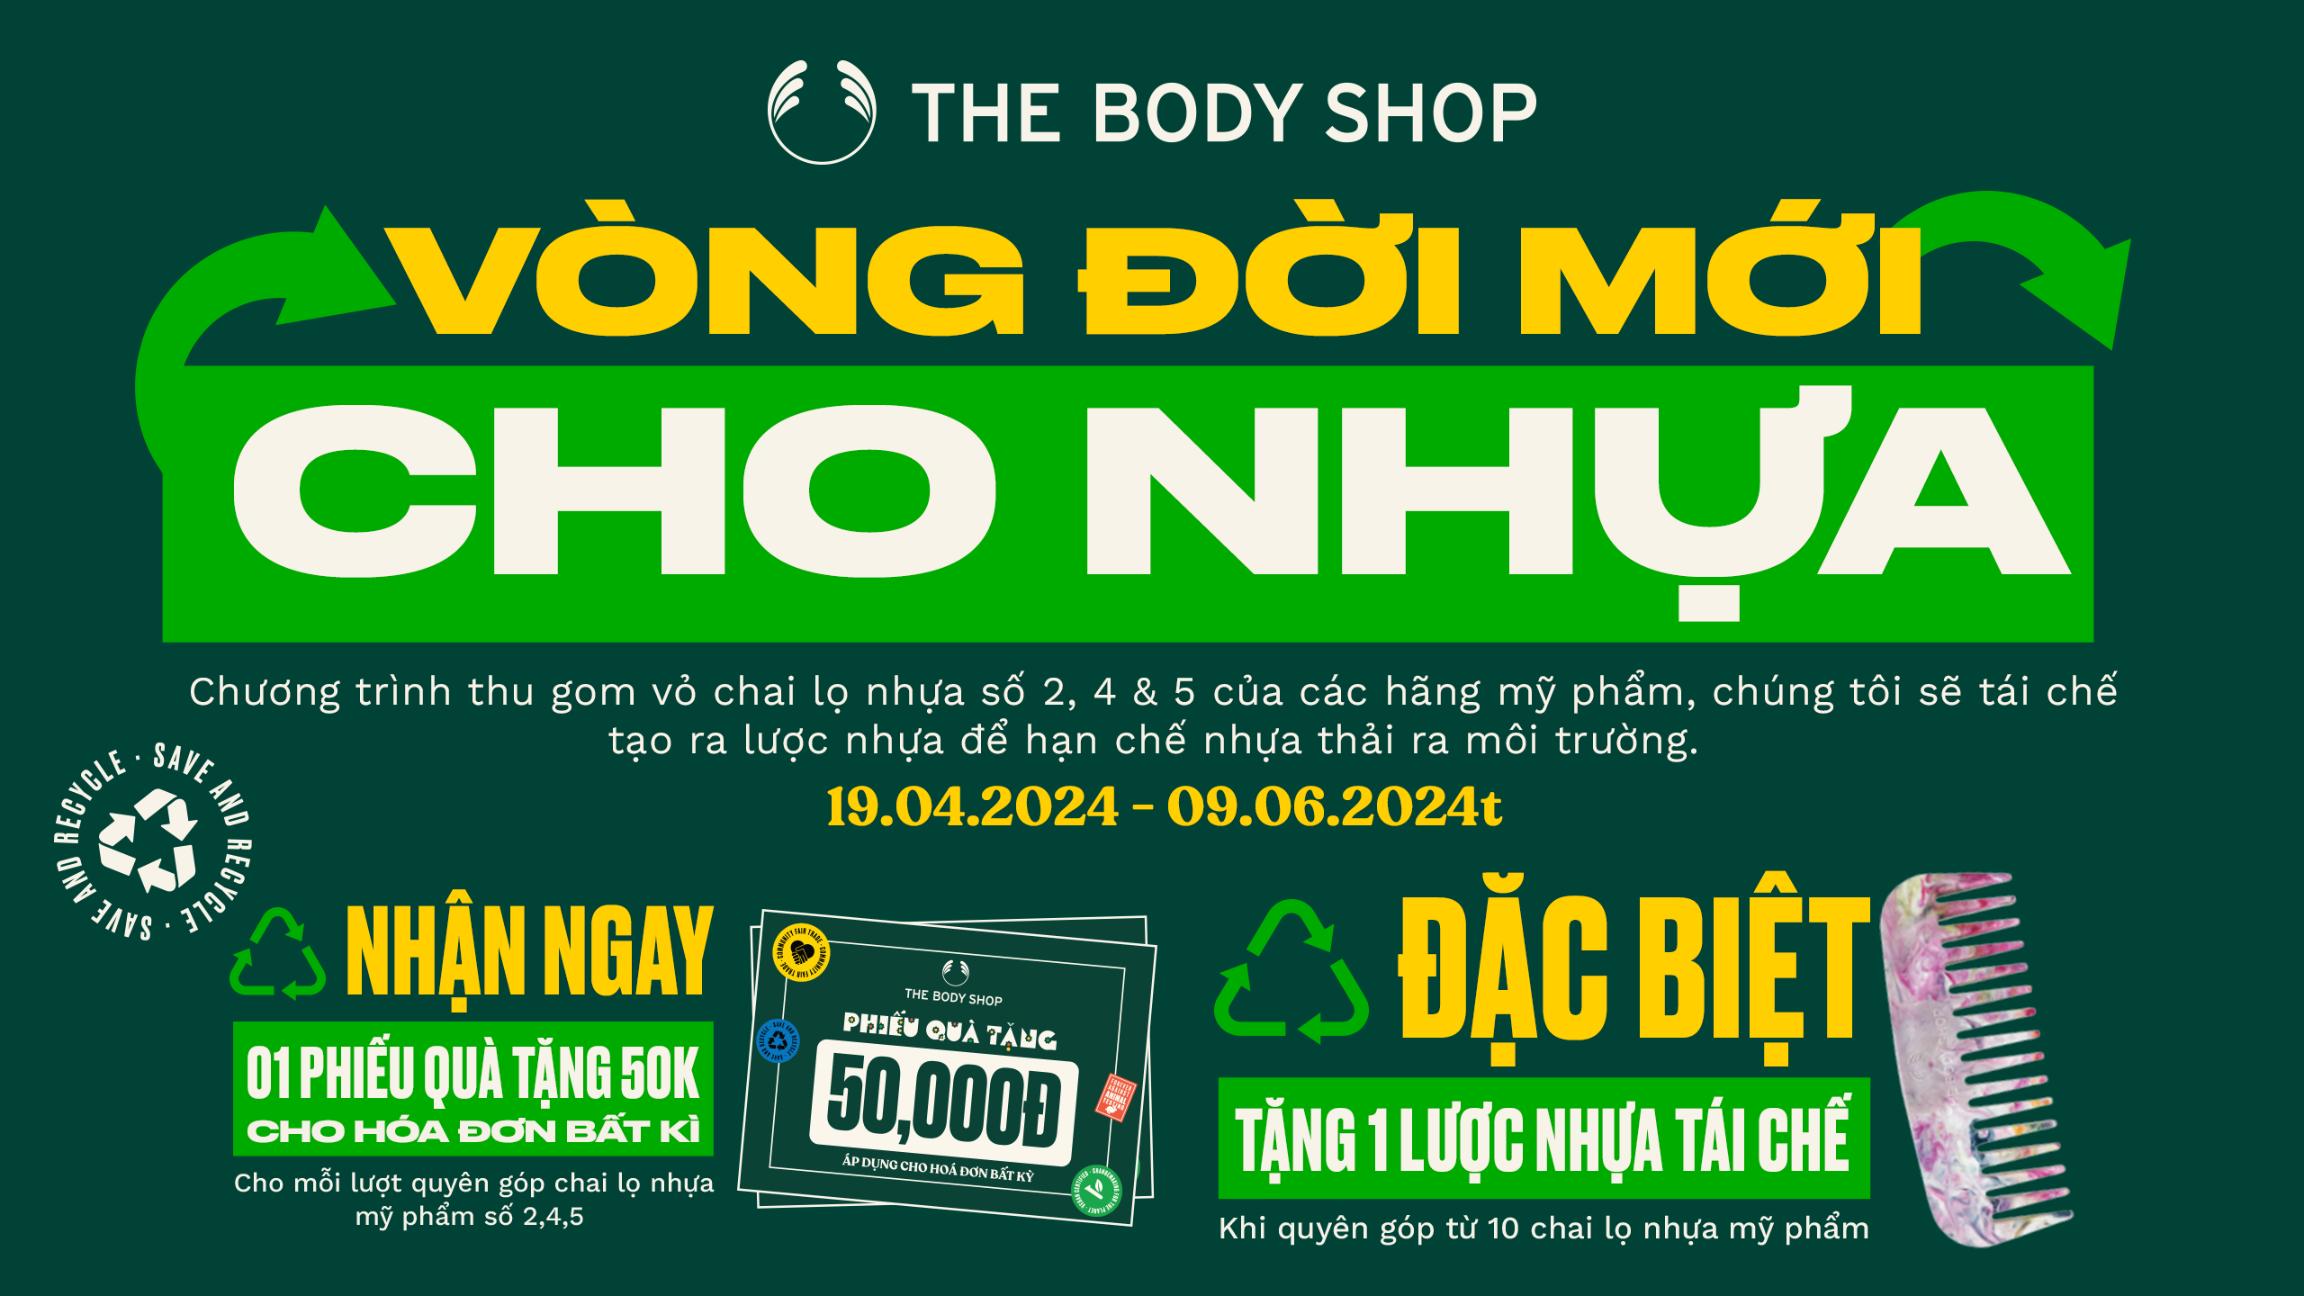 The Body Shop 1.1 Tái sinh vòng đời mới cho nhựa cùng The Body Shop